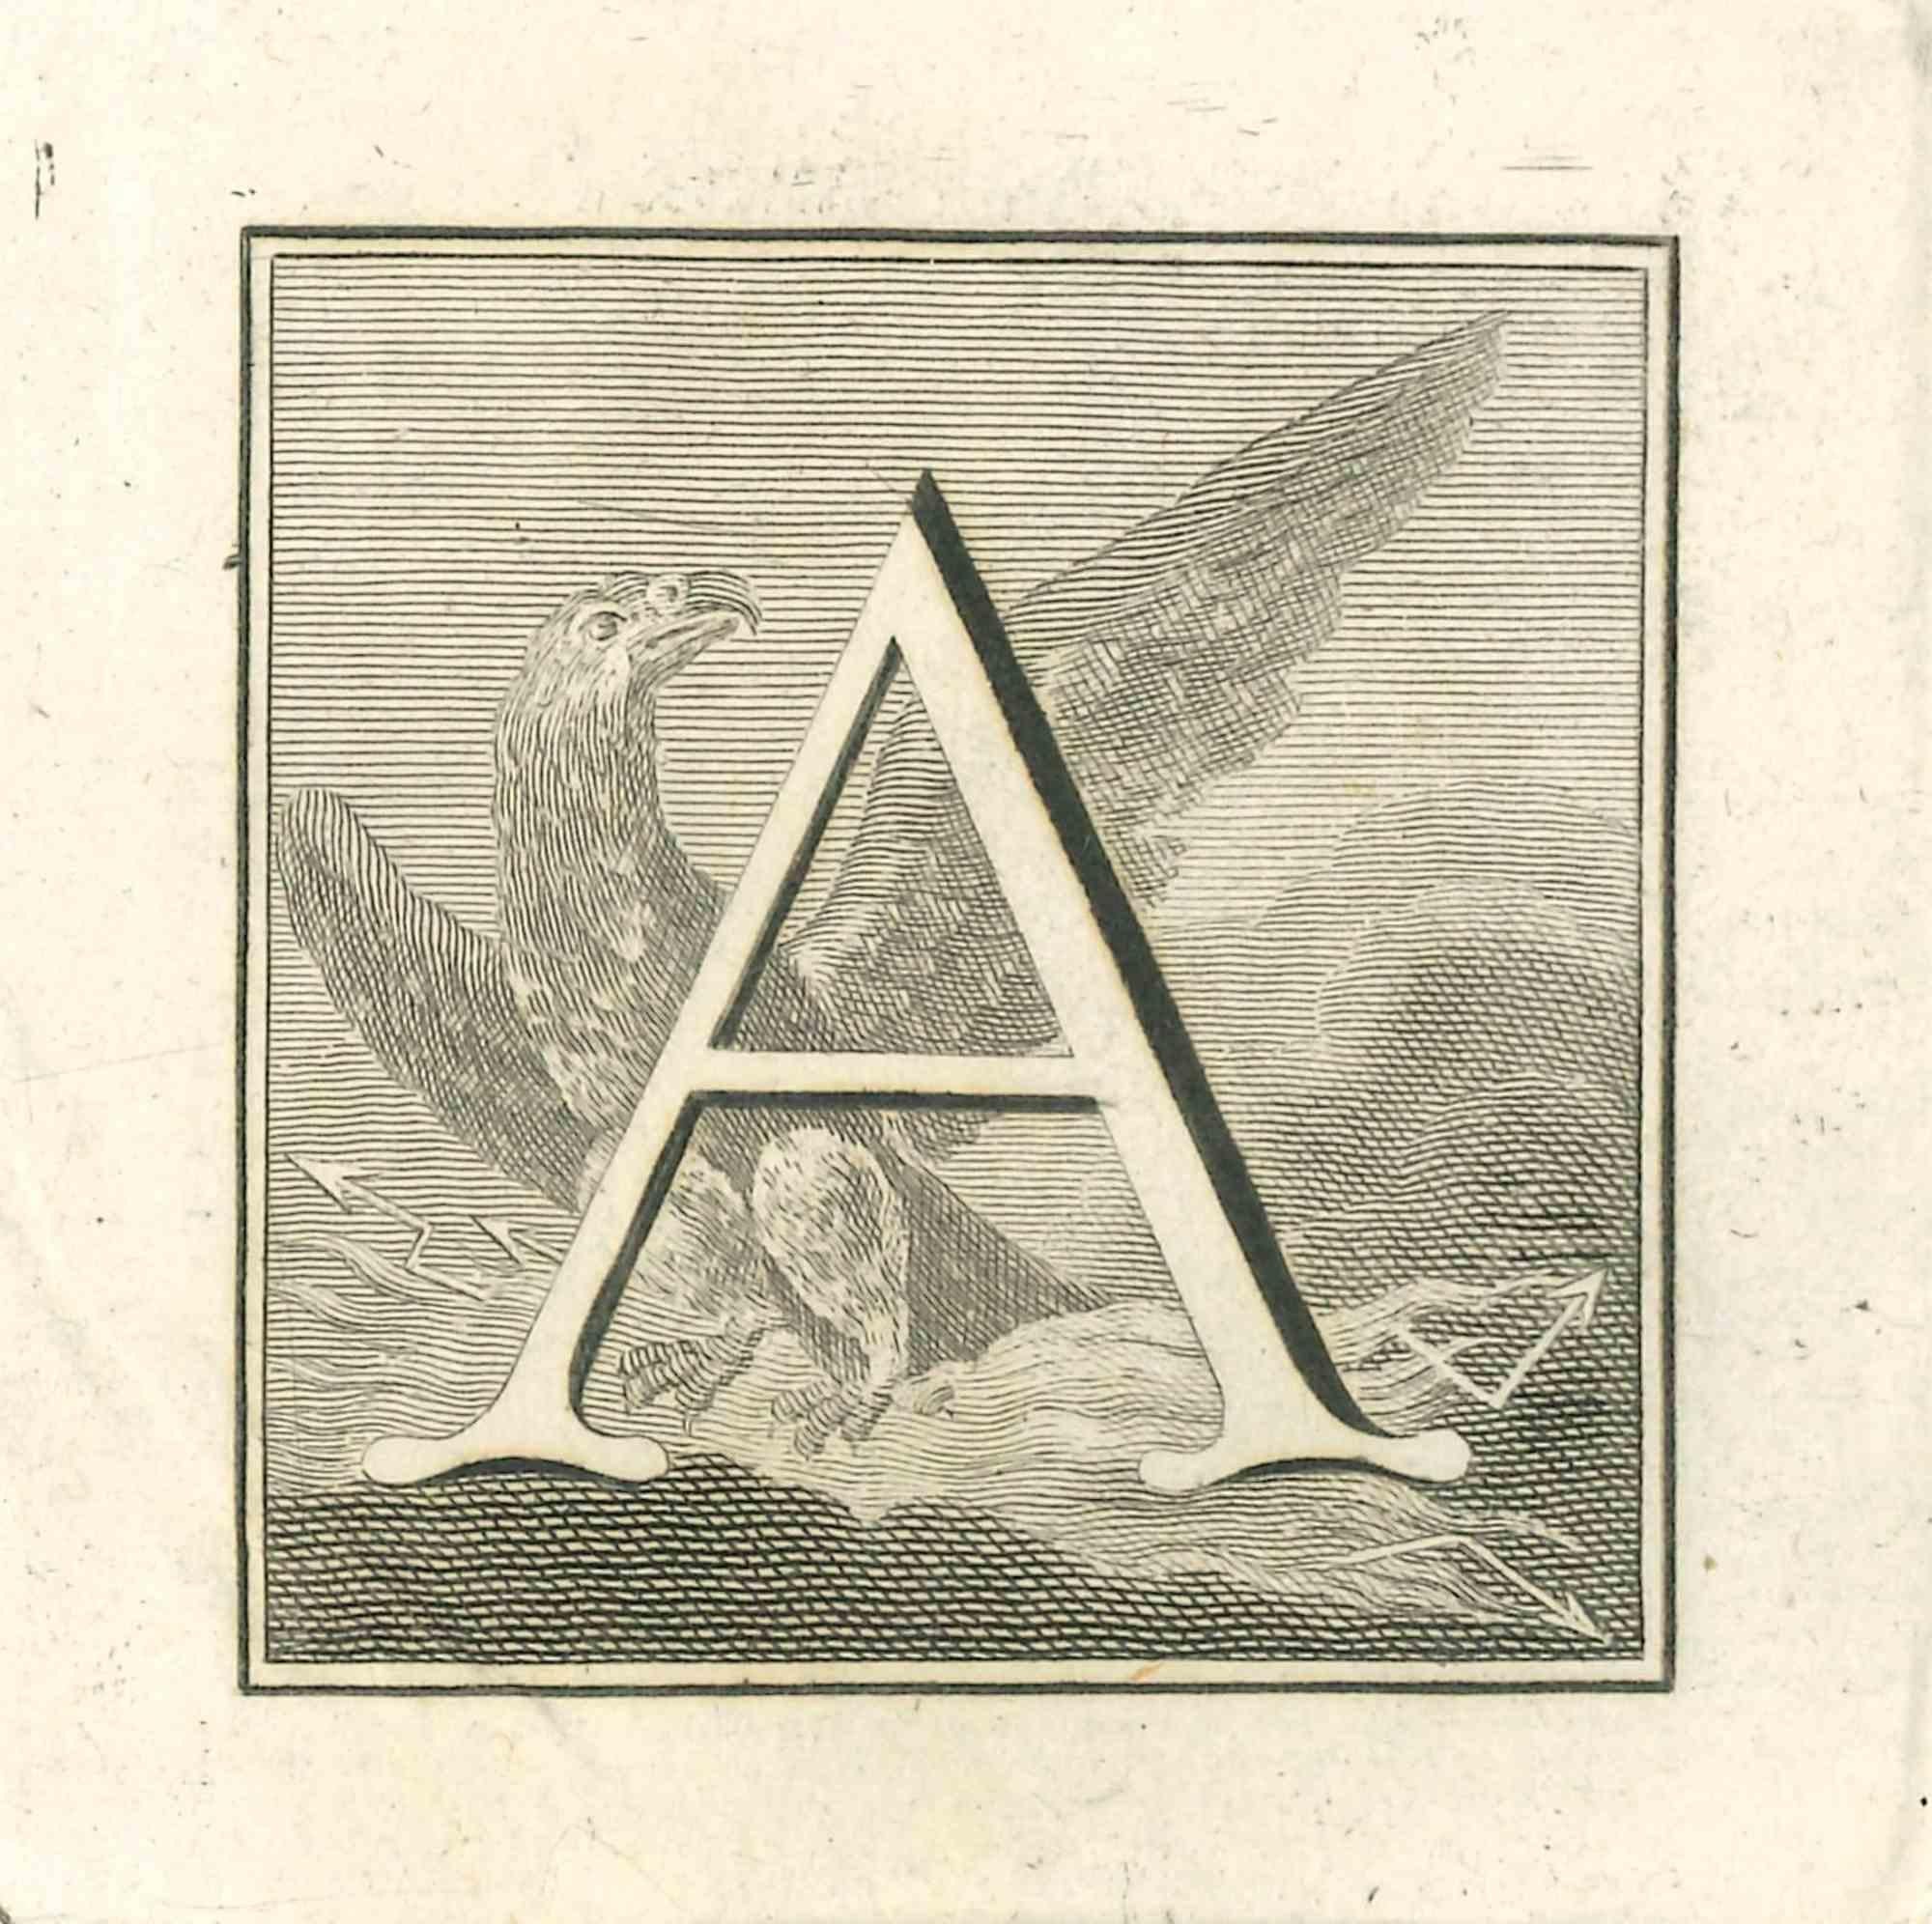 Buchstabe A ist eine Radierung von Luigi Vanvitelli Künstler des 18. Jahrhunderts realisiert.

Die Radierung gehört zu der Druckserie "Antiquities of Herculaneum Exposed" (Originaltitel: "Le Antichità di Ercolano Esposte"), einem achtbändigen Band